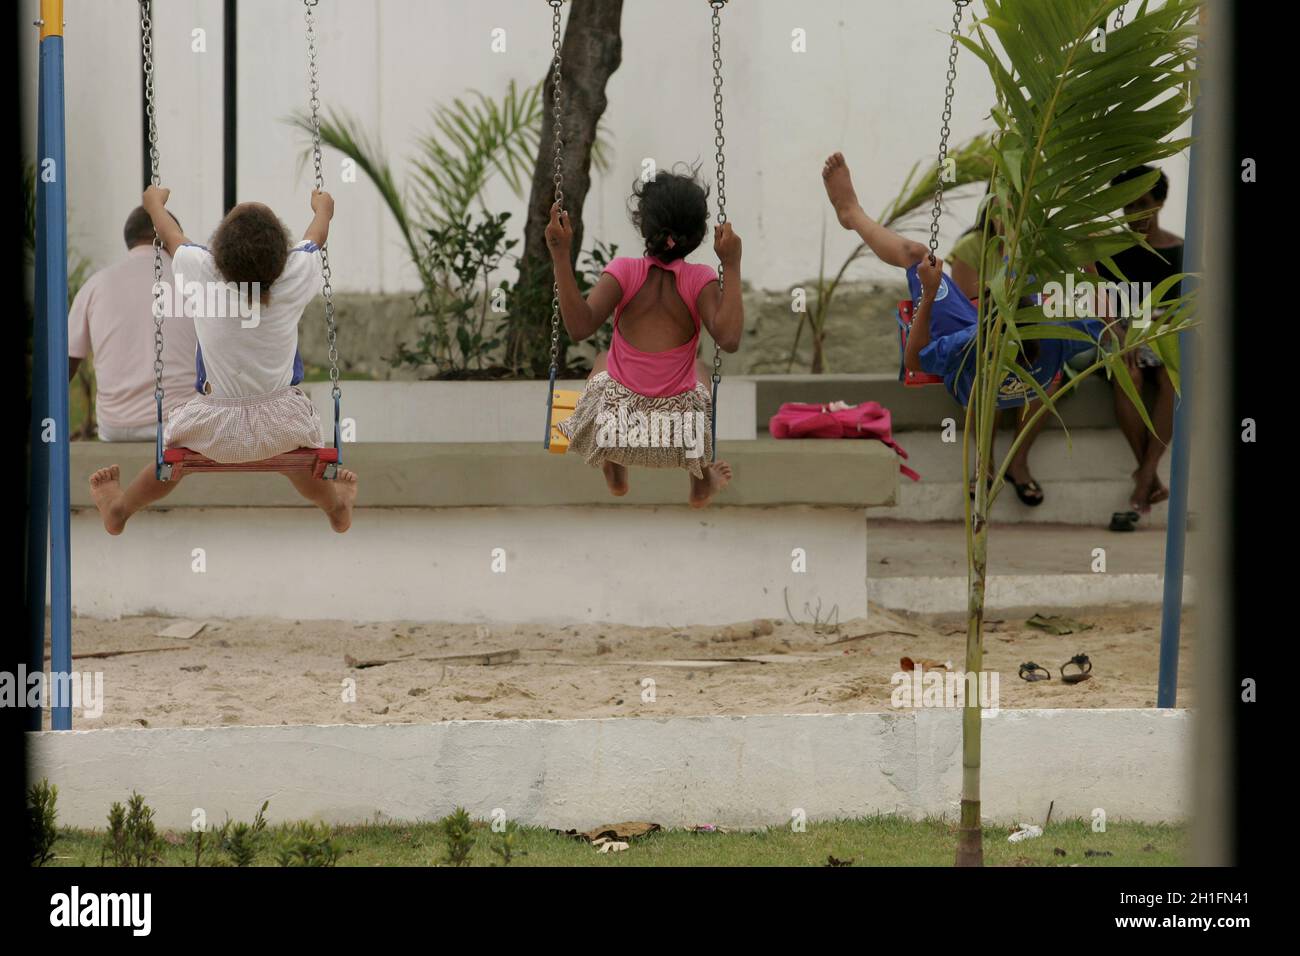 salvador, bahia / brasilien - 2. oktober 2012: Kinder werden auf einem Spielplatz im Stadtteil Tancredo Neves in Salvador leise spielen sehen. *** Loc Stockfoto